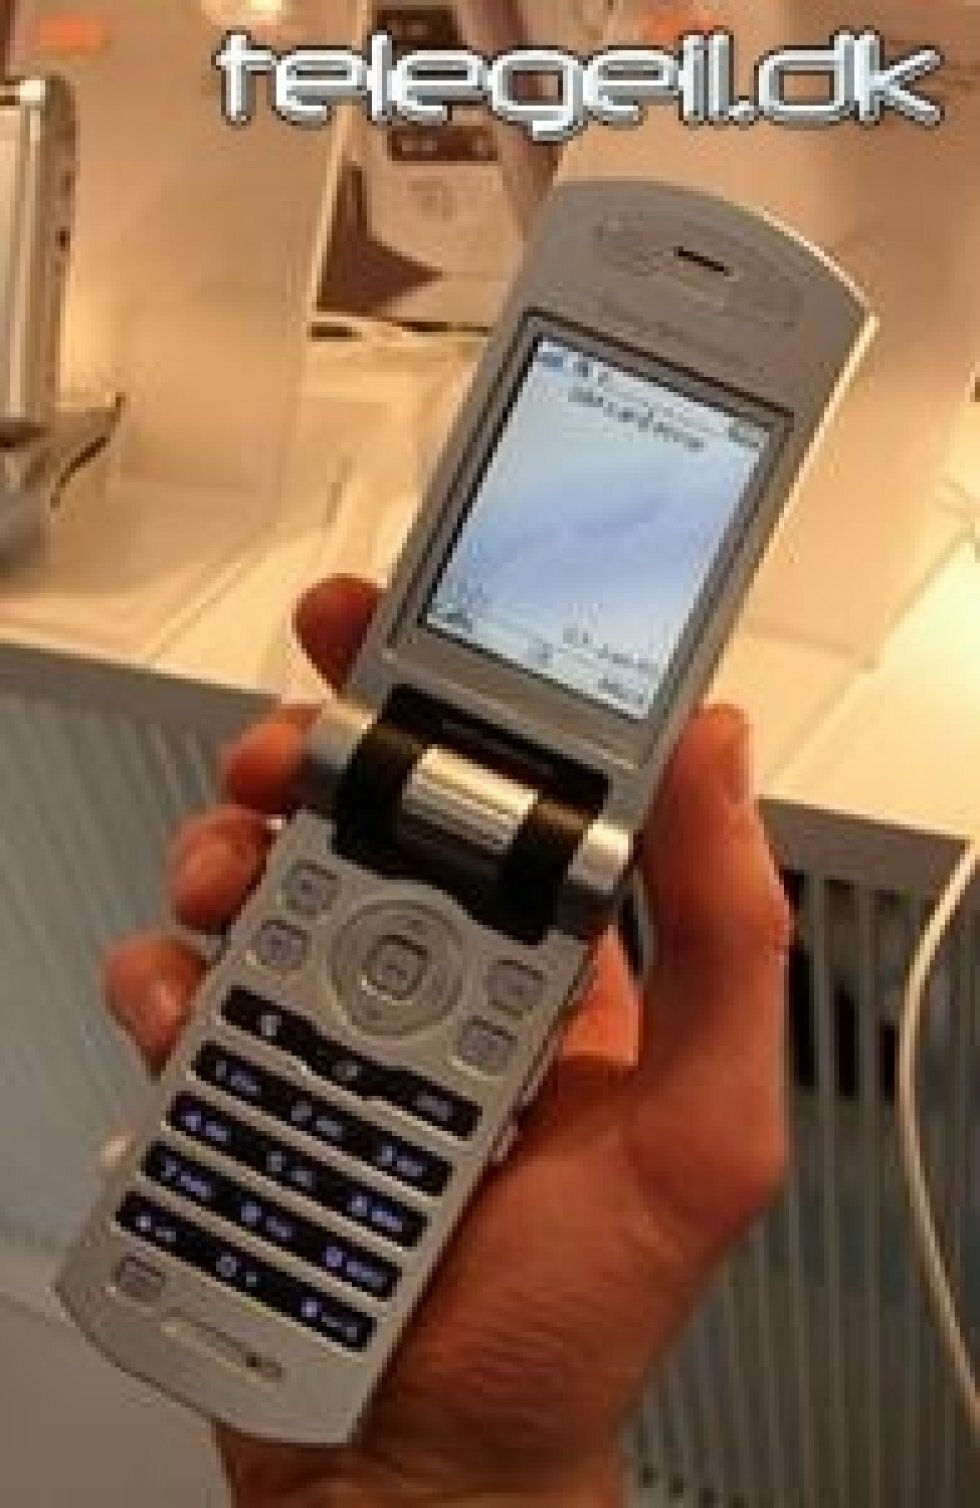 CeBIT 2005 - Sony Ericsson